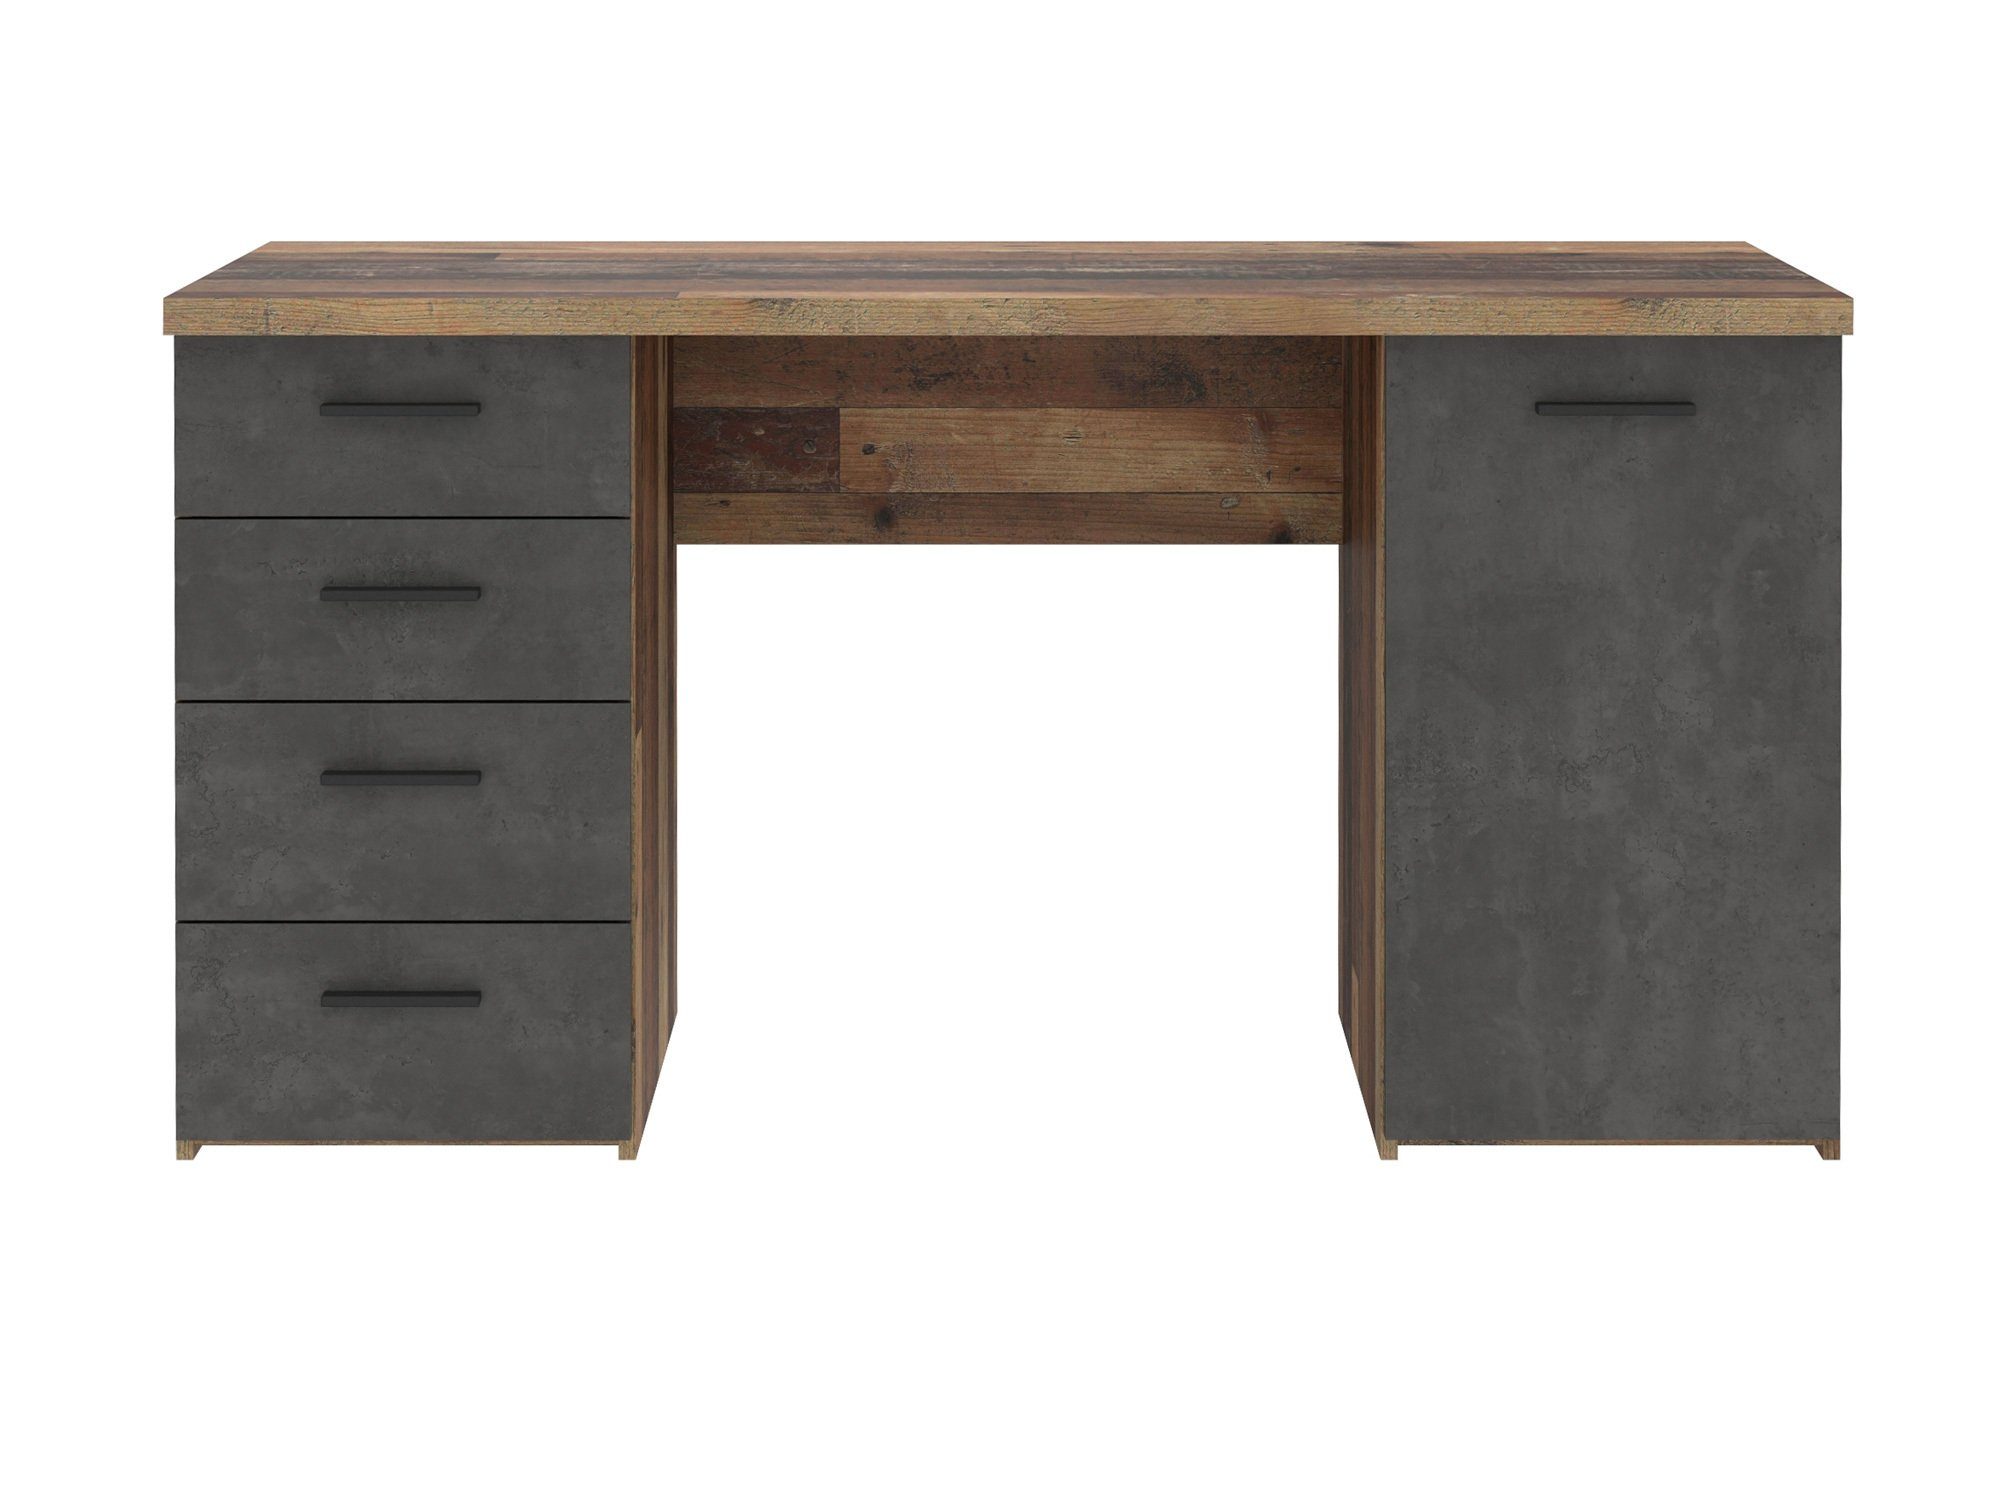 Dekorspanplatte Material Old vintage/betonfarbig Moebel-Eins Schreibtisch Schreibtisch, wood MIGEL